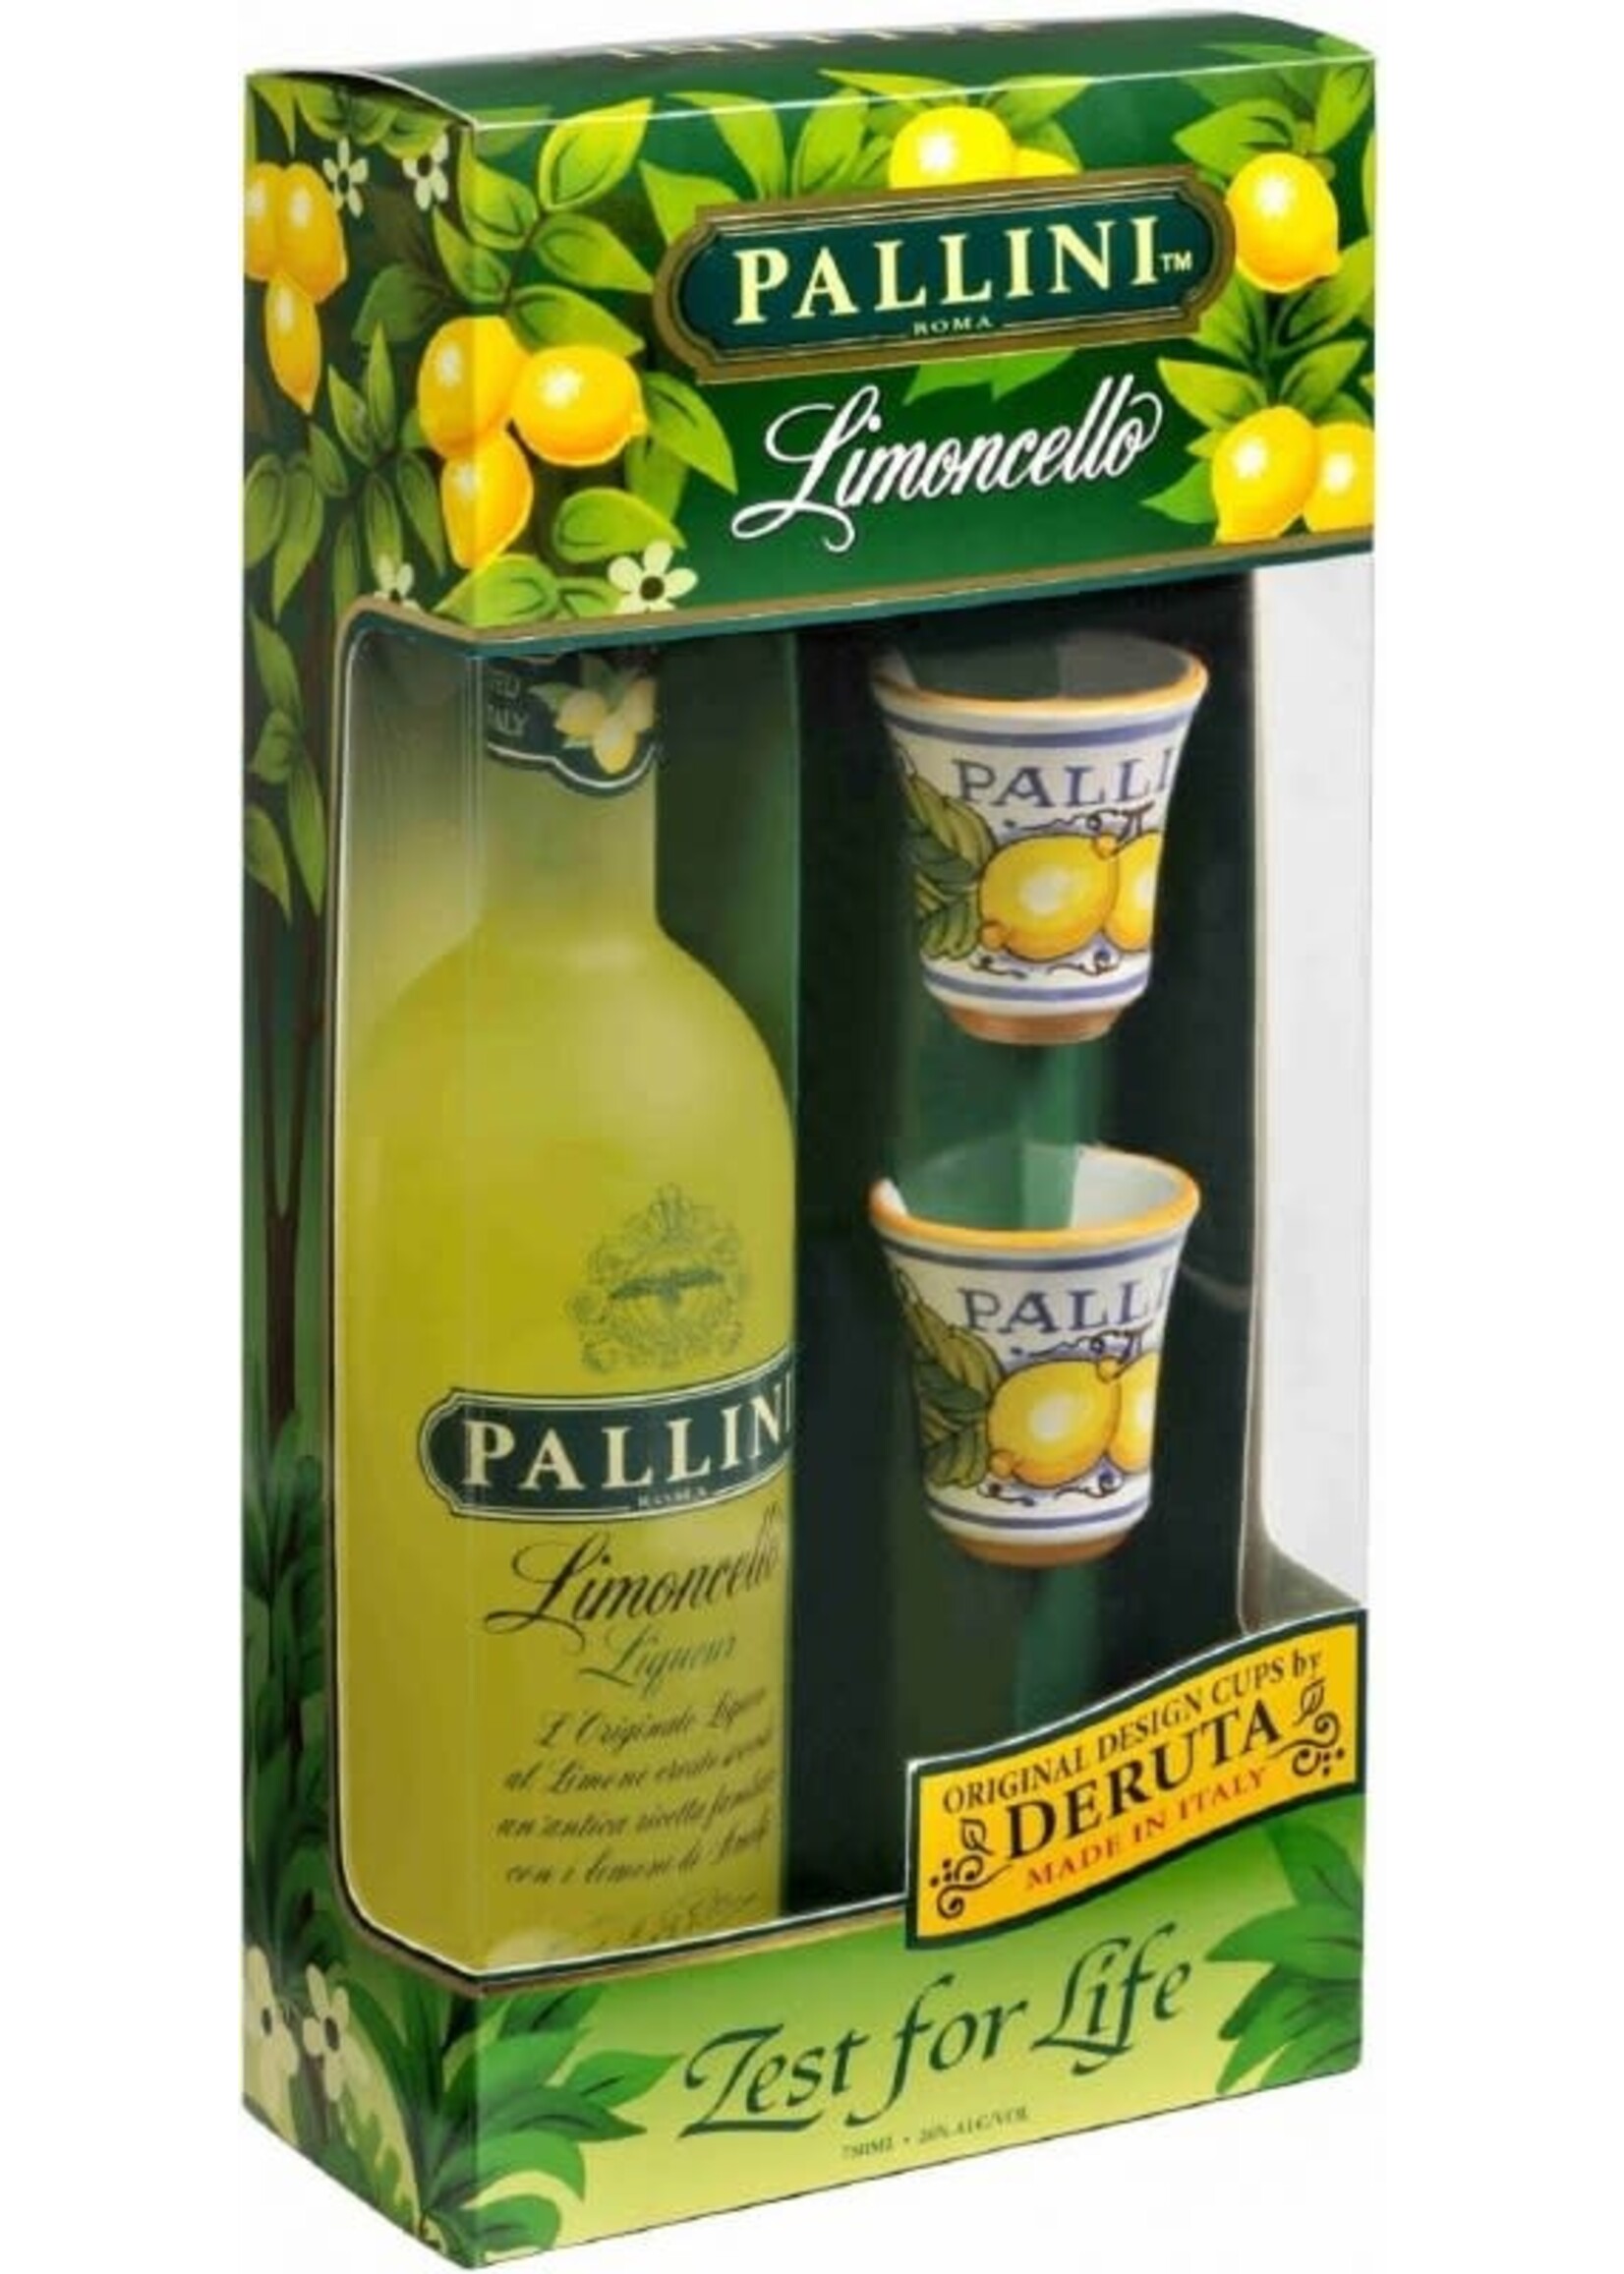 Pallini Limoncello Liqueur 52Proof Gift Sets 750ml